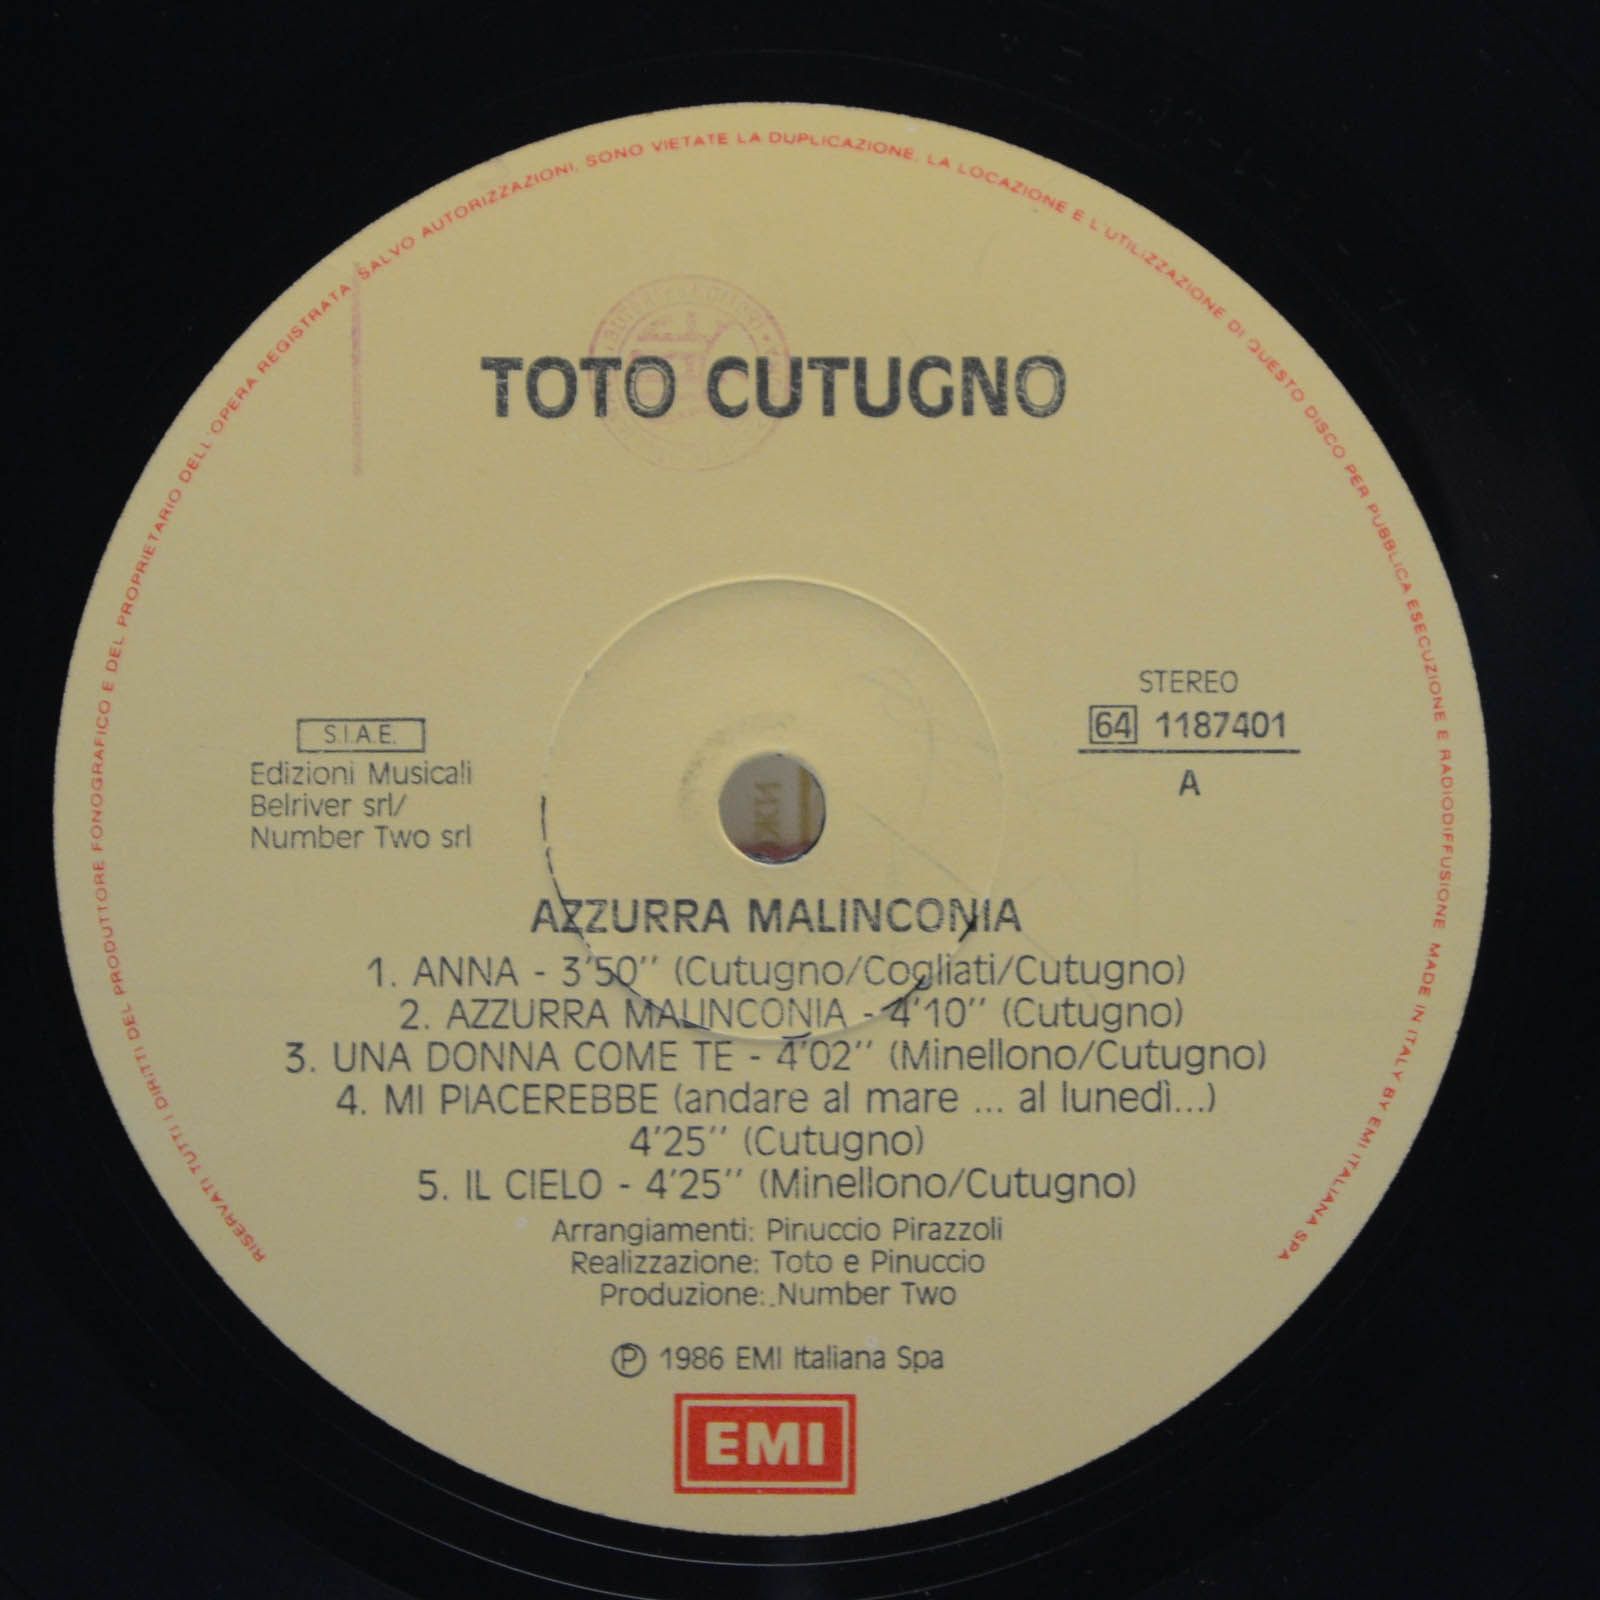 Toto Cutugno — Azzurra Malinconia (Italy), 1986